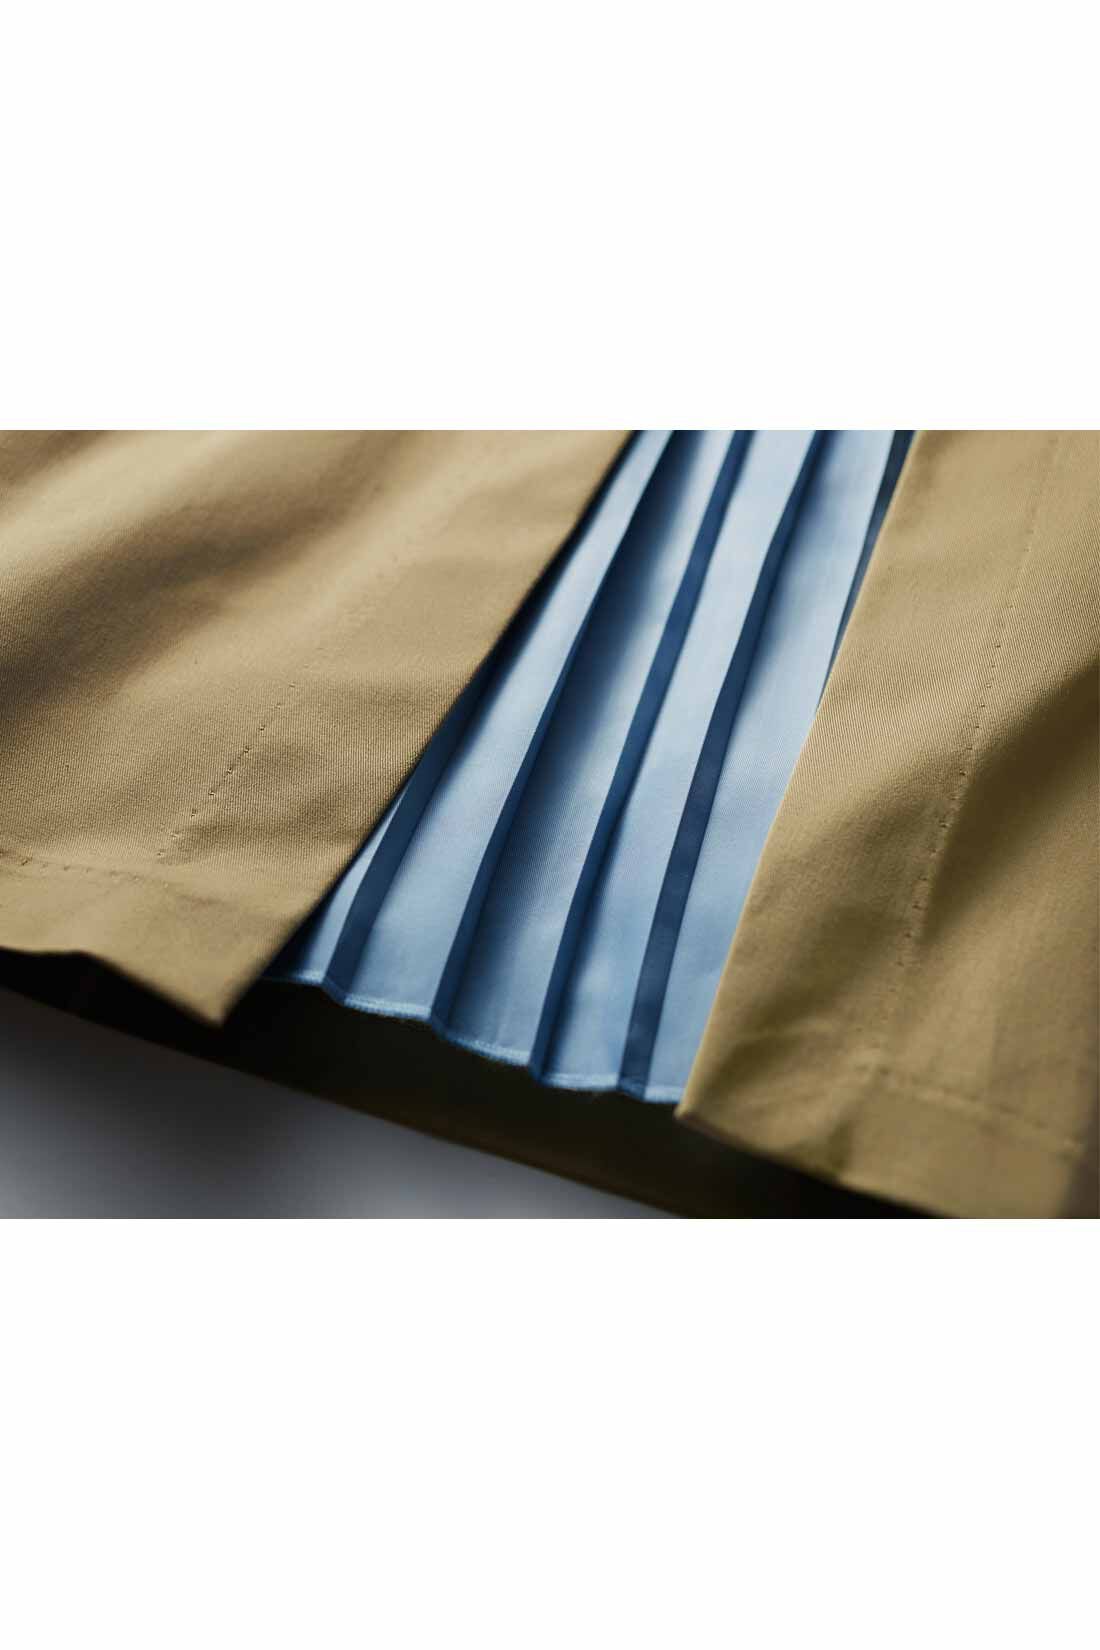 Real Stock|IEDIT[イディット]　プリーツ切り替えスカート〈ベージュ〉|スカート本体はさらりと快適な肌ざわりの綿混素材。